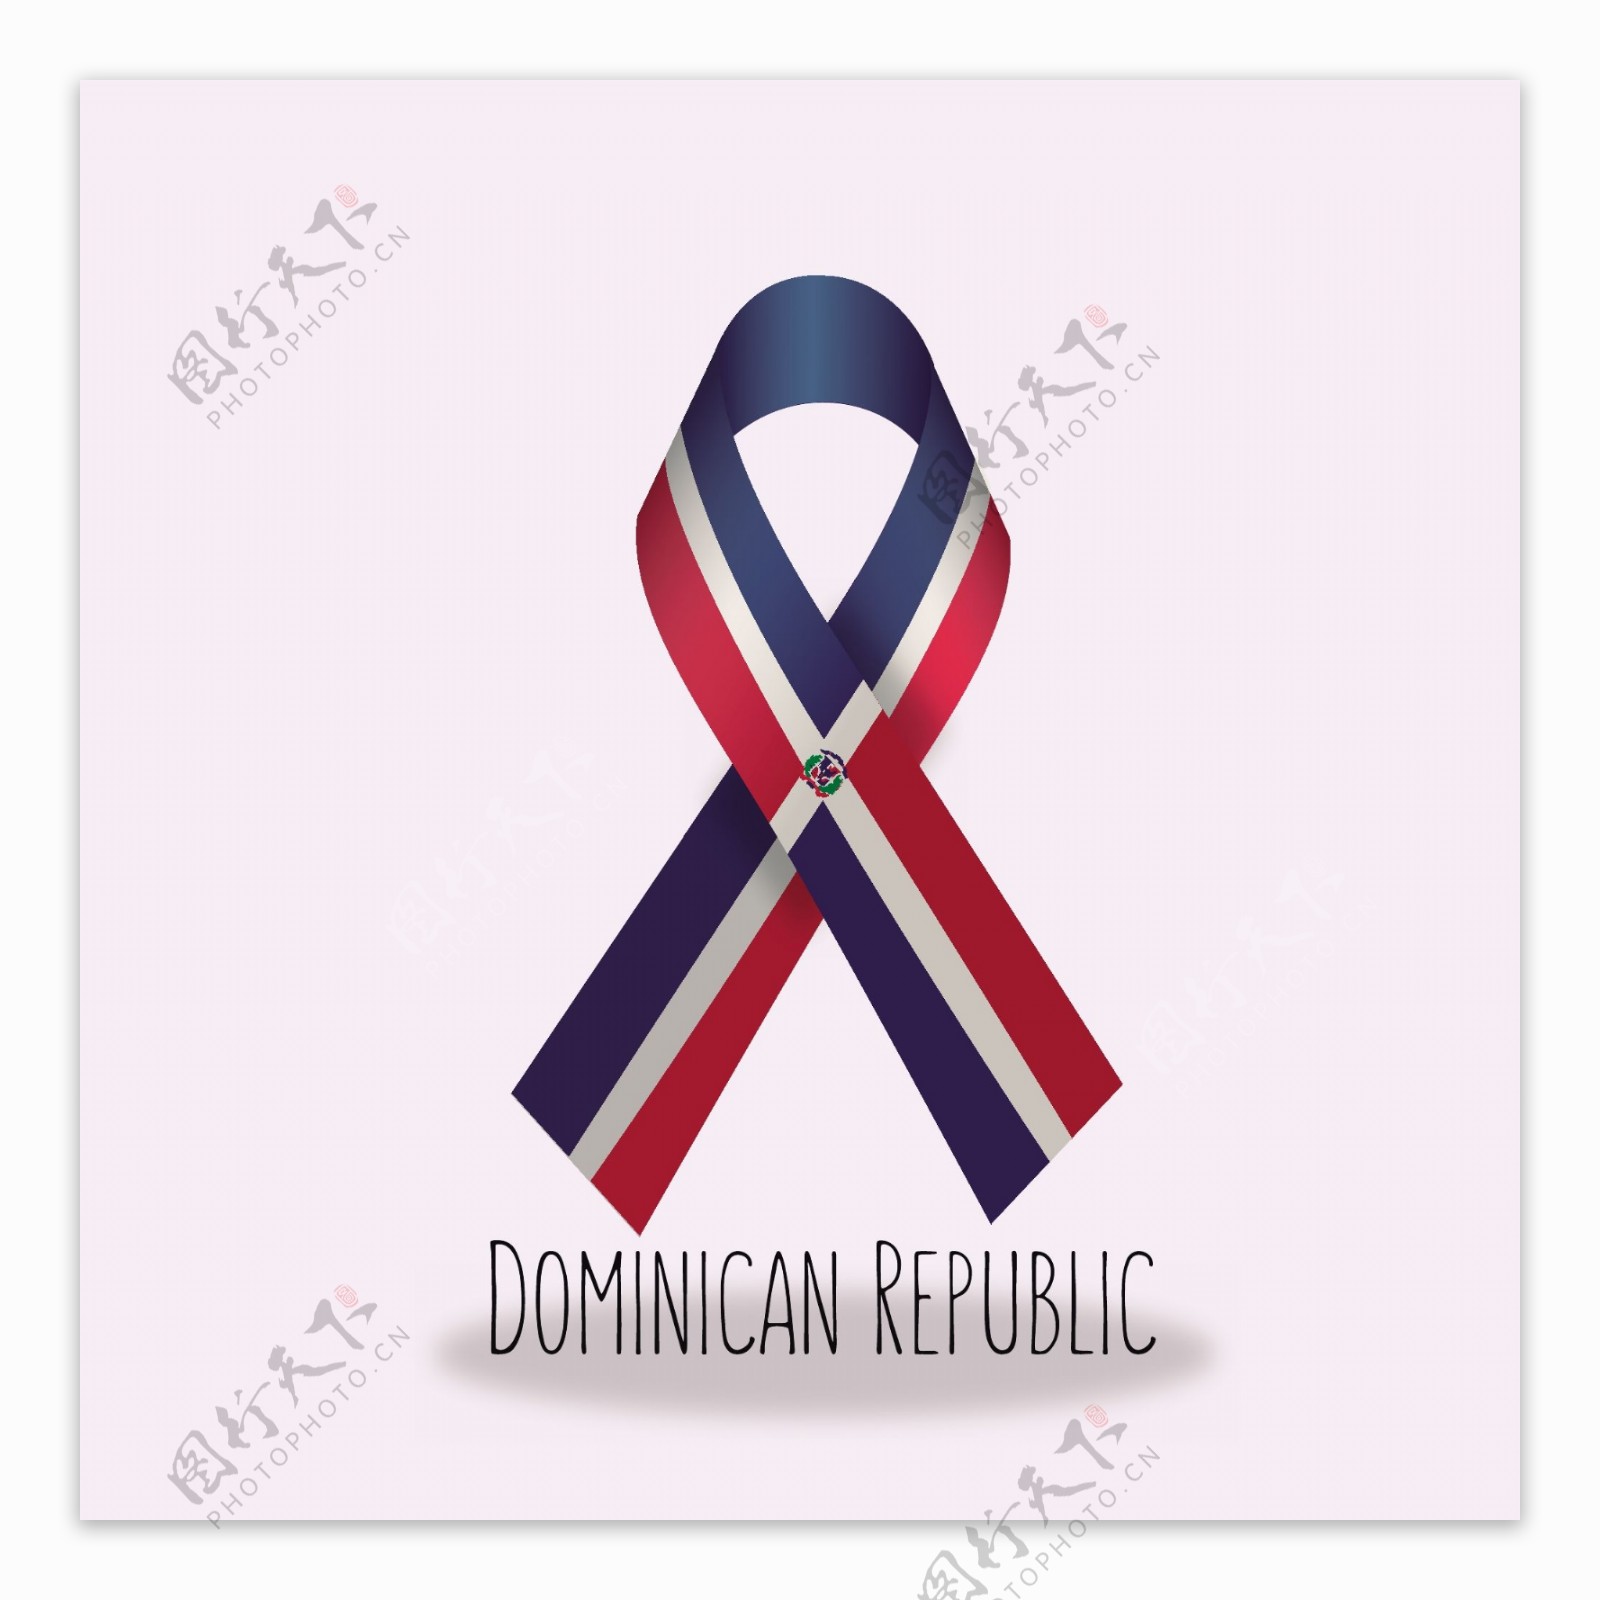 多米尼加共和国国旗丝带设计矢量素材